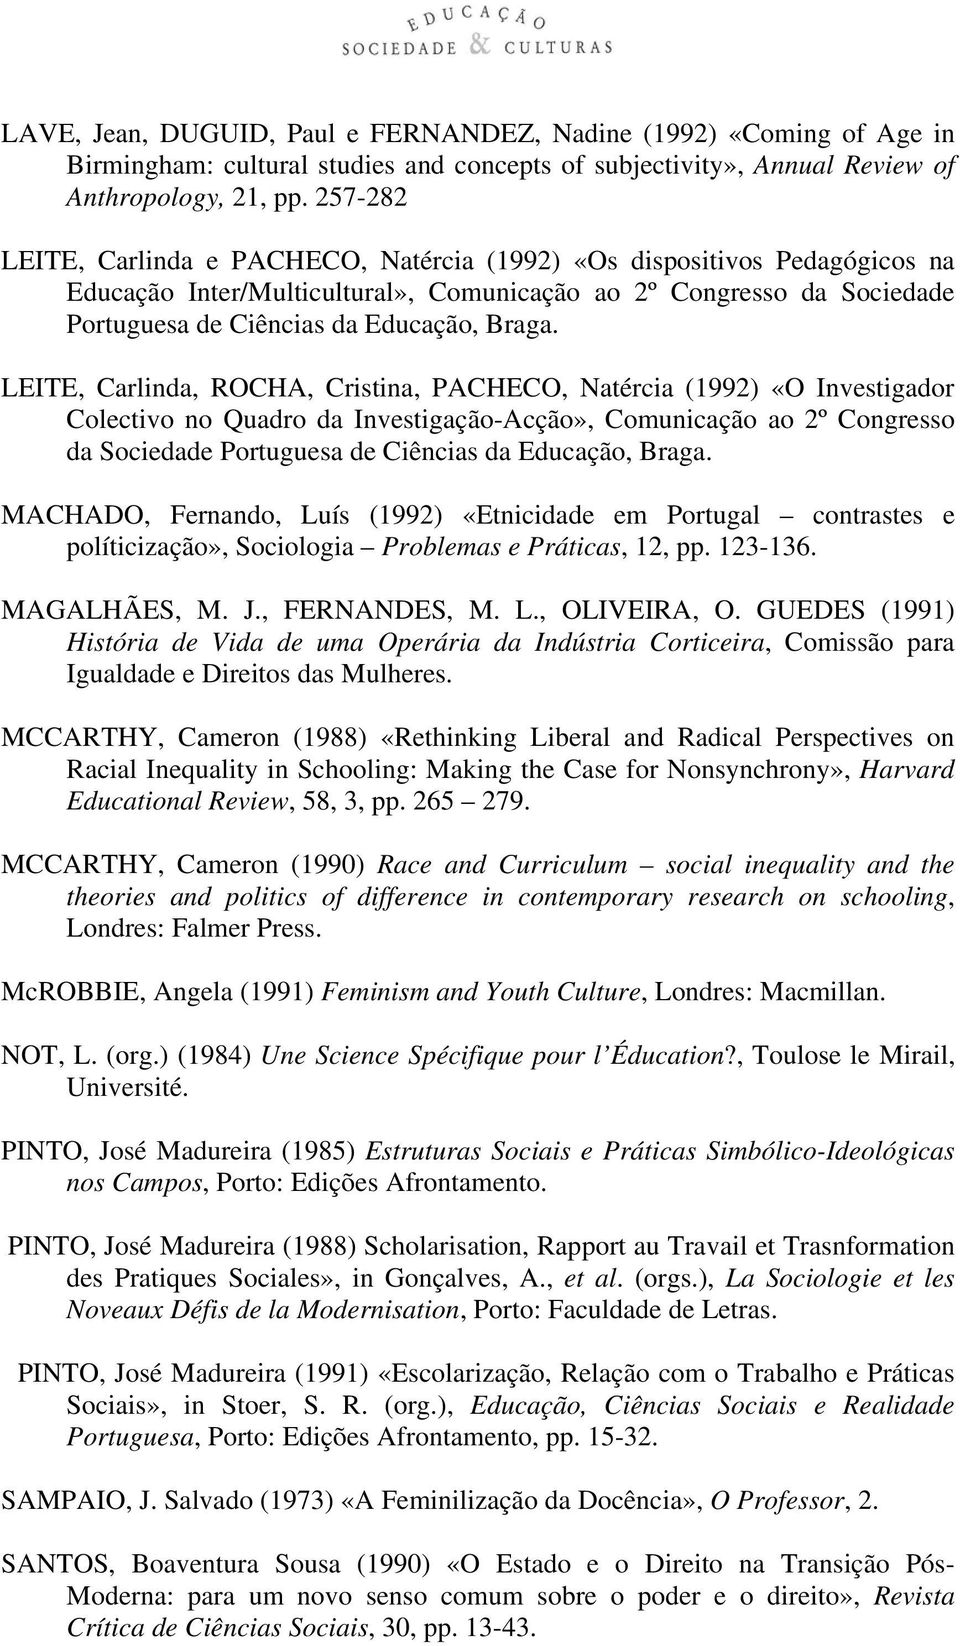 LEITE, Carlinda, ROCHA, Cristina, PACHECO, Natércia (1992) «O Investigador Colectivo no Quadro da Investigação-Acção», Comunicação ao 2º Congresso da Sociedade Portuguesa de Ciências da Educação,